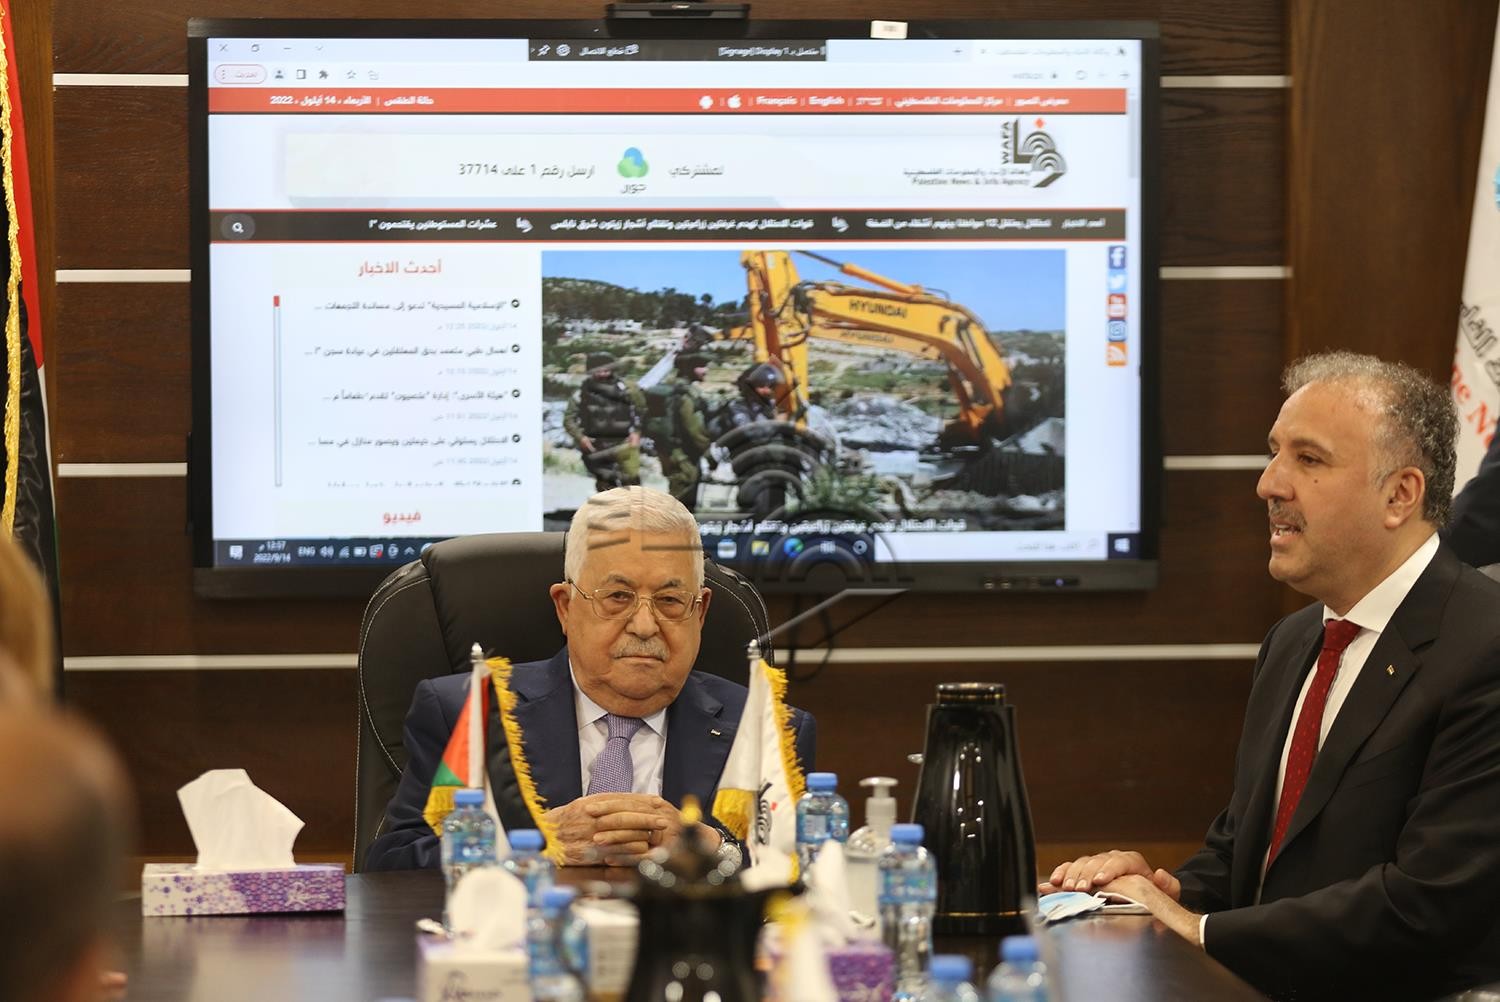 رام الله - الرئيس محمود عباس، يفتتح المقر المؤقت لوكالة الانباء والمعلومات الفلسطينية - وفا 13.jpg